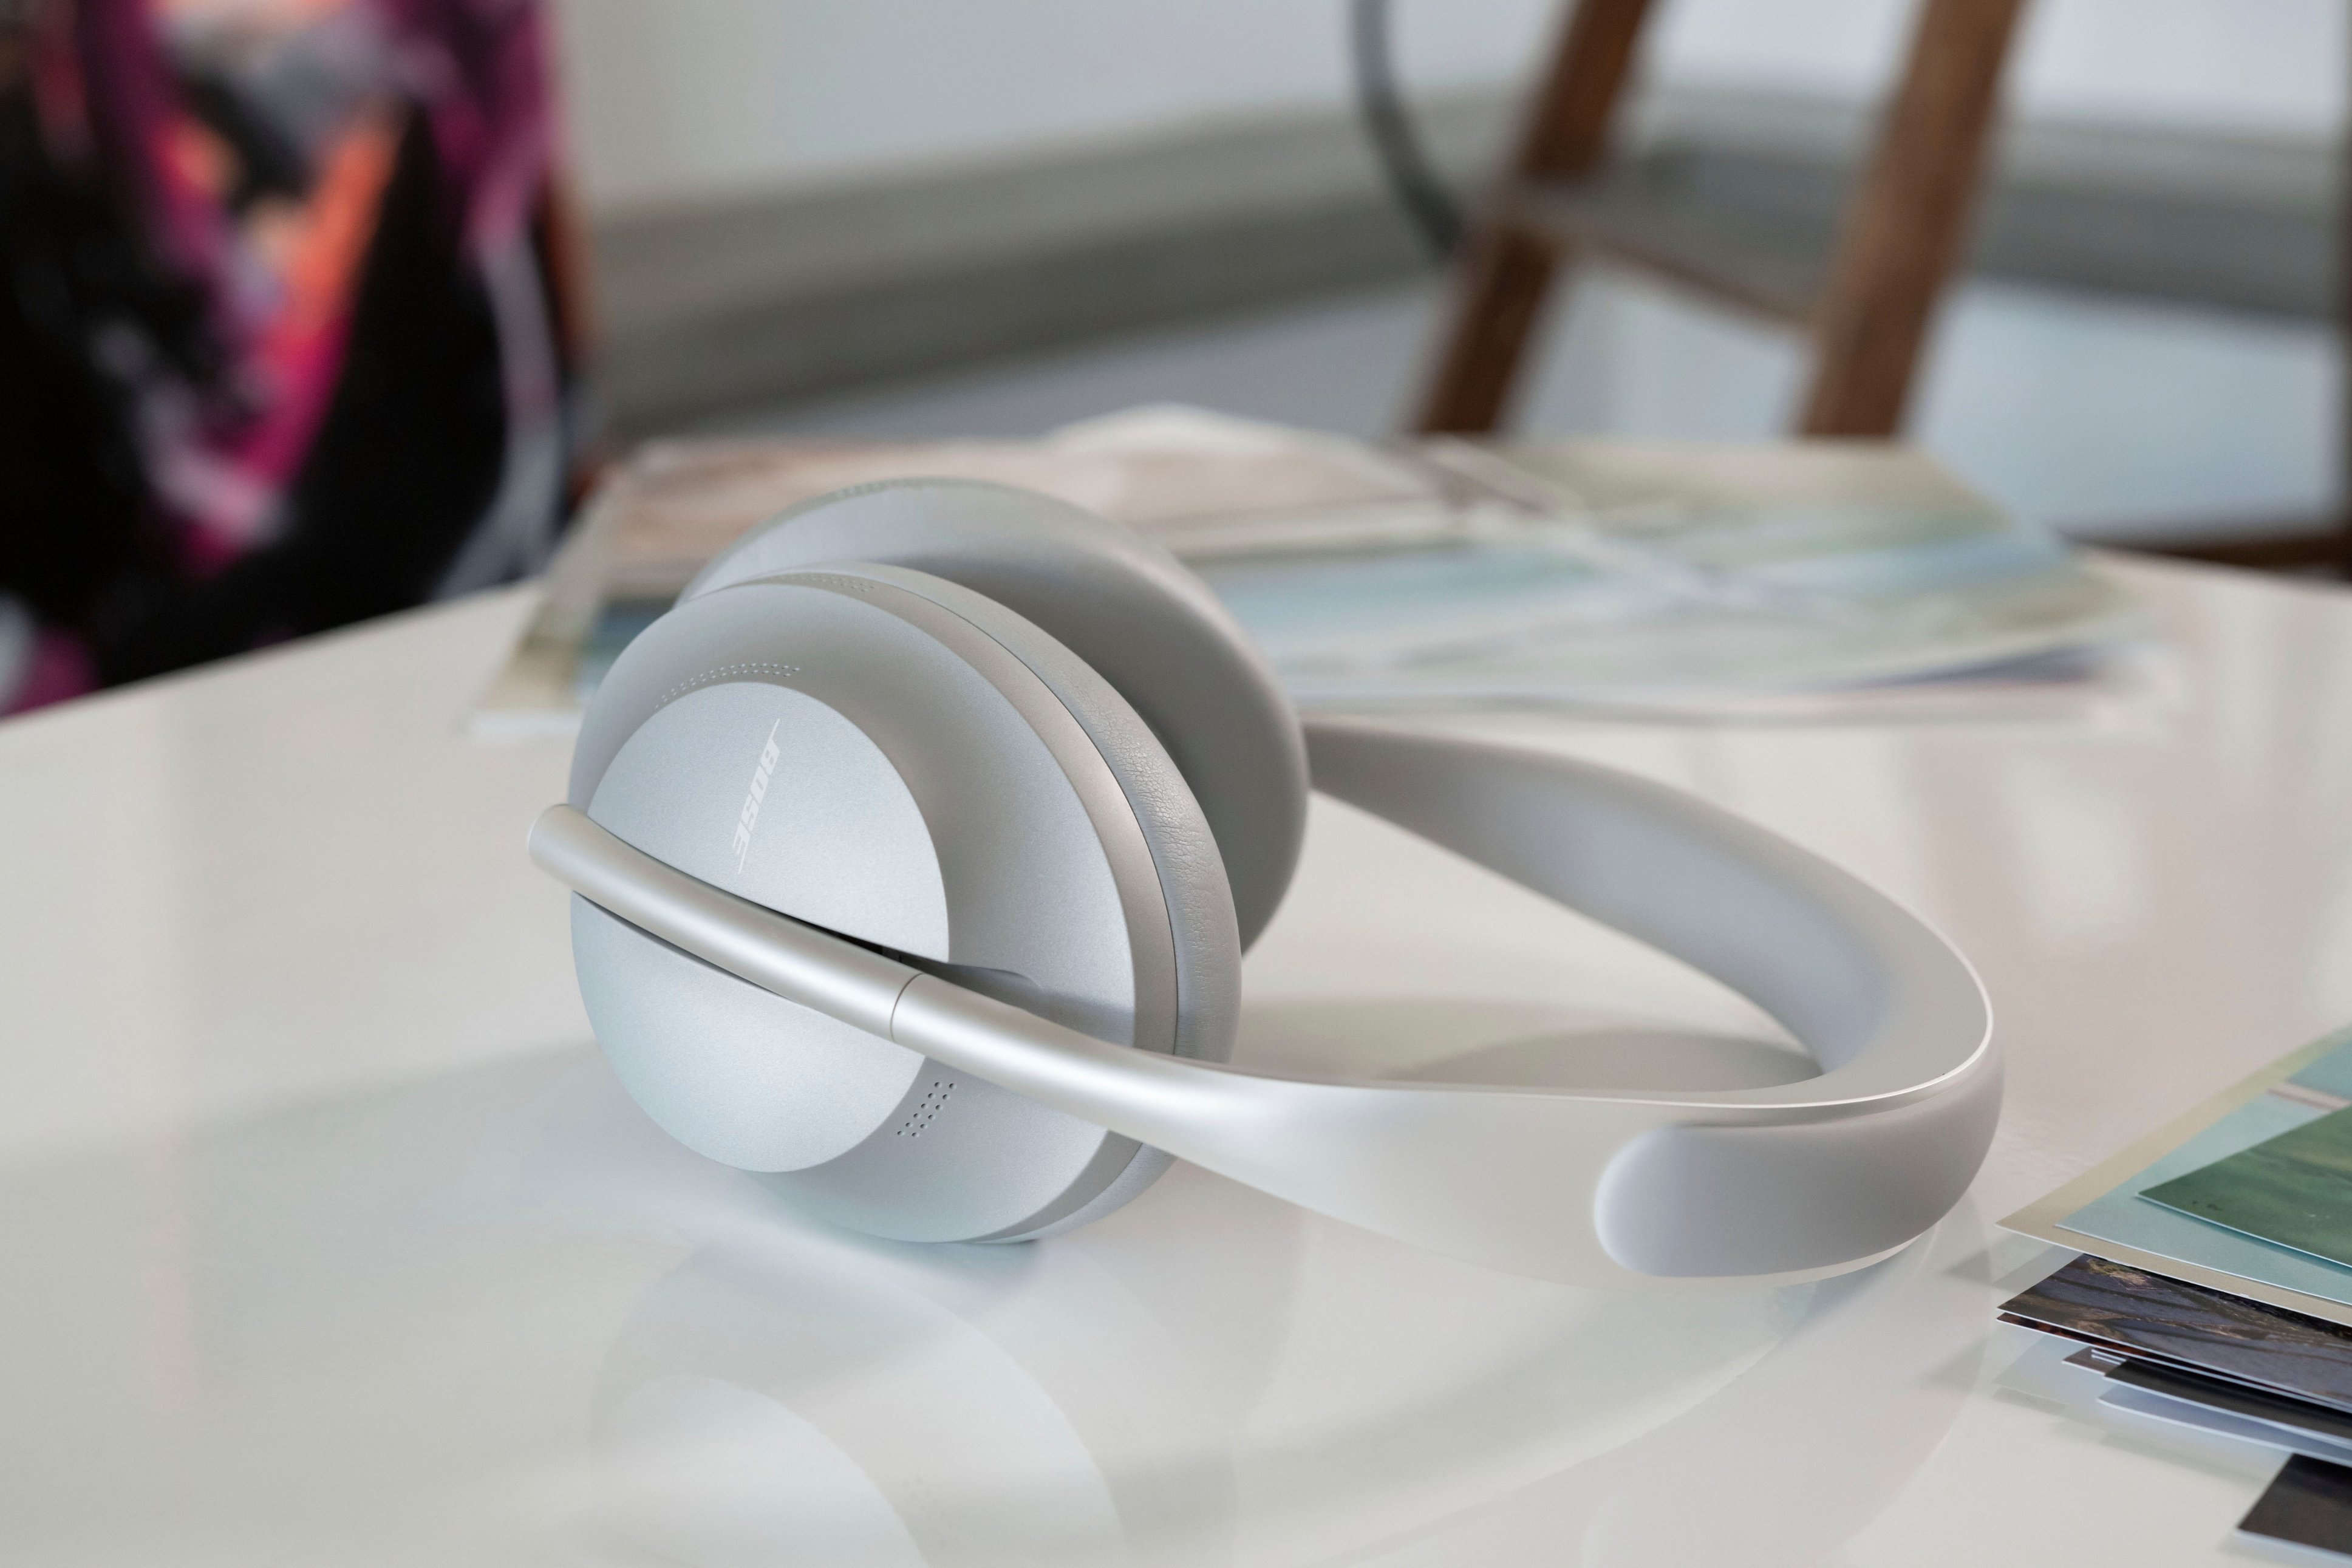 オーディオ機器 ヘッドフォン Bose Headphones 700 Wireless Noise Cancelling Over-the-Ear 